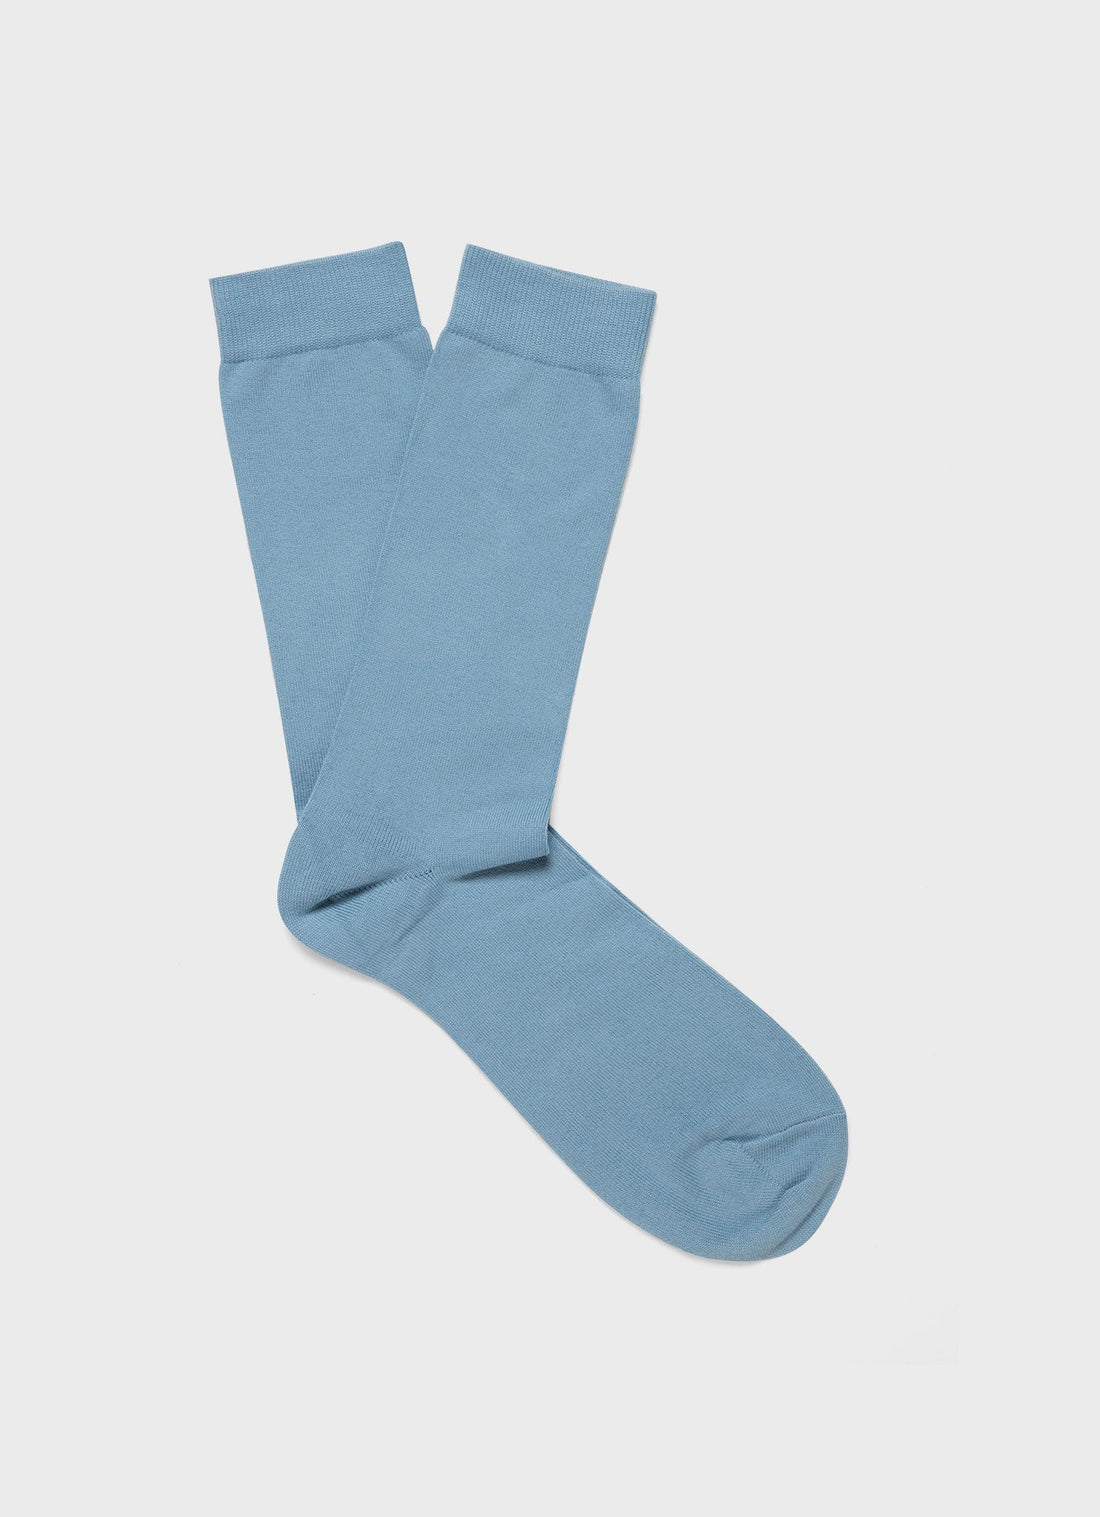 Men's Long Staple Cotton Socks in Storm Blue